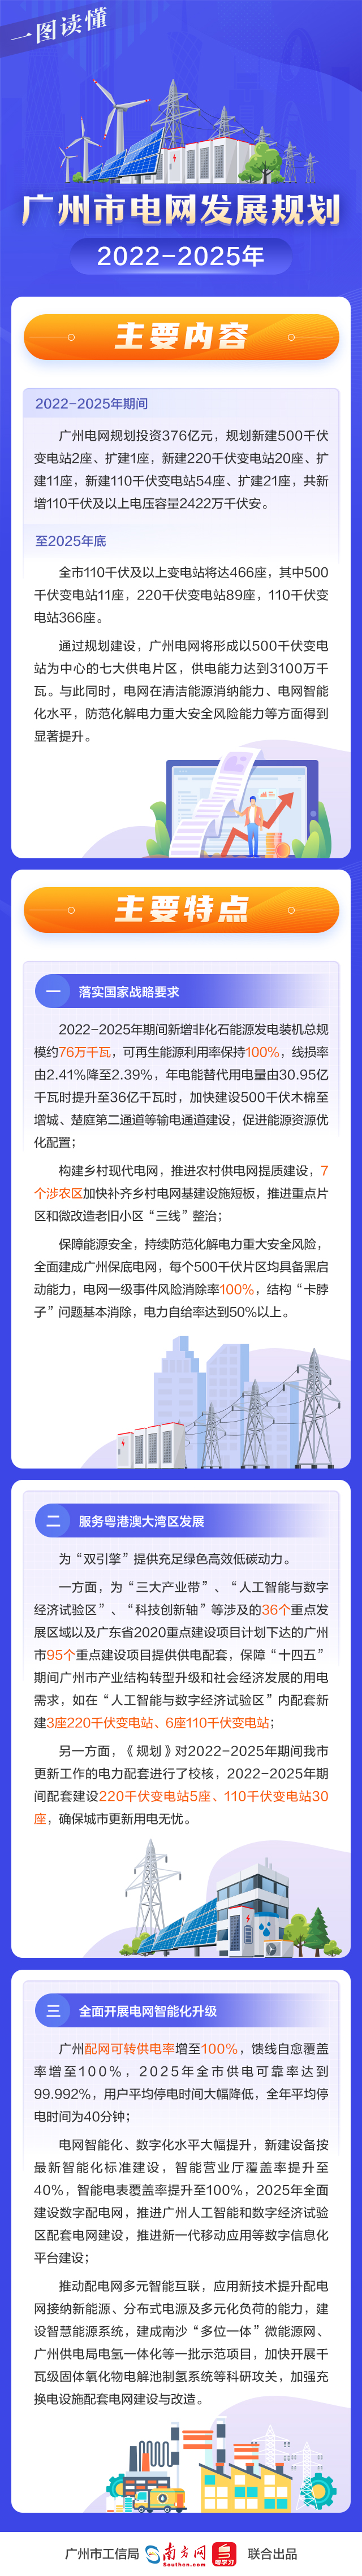 一图读懂《广州市电网发展规划（2022-2025年）》.jpg